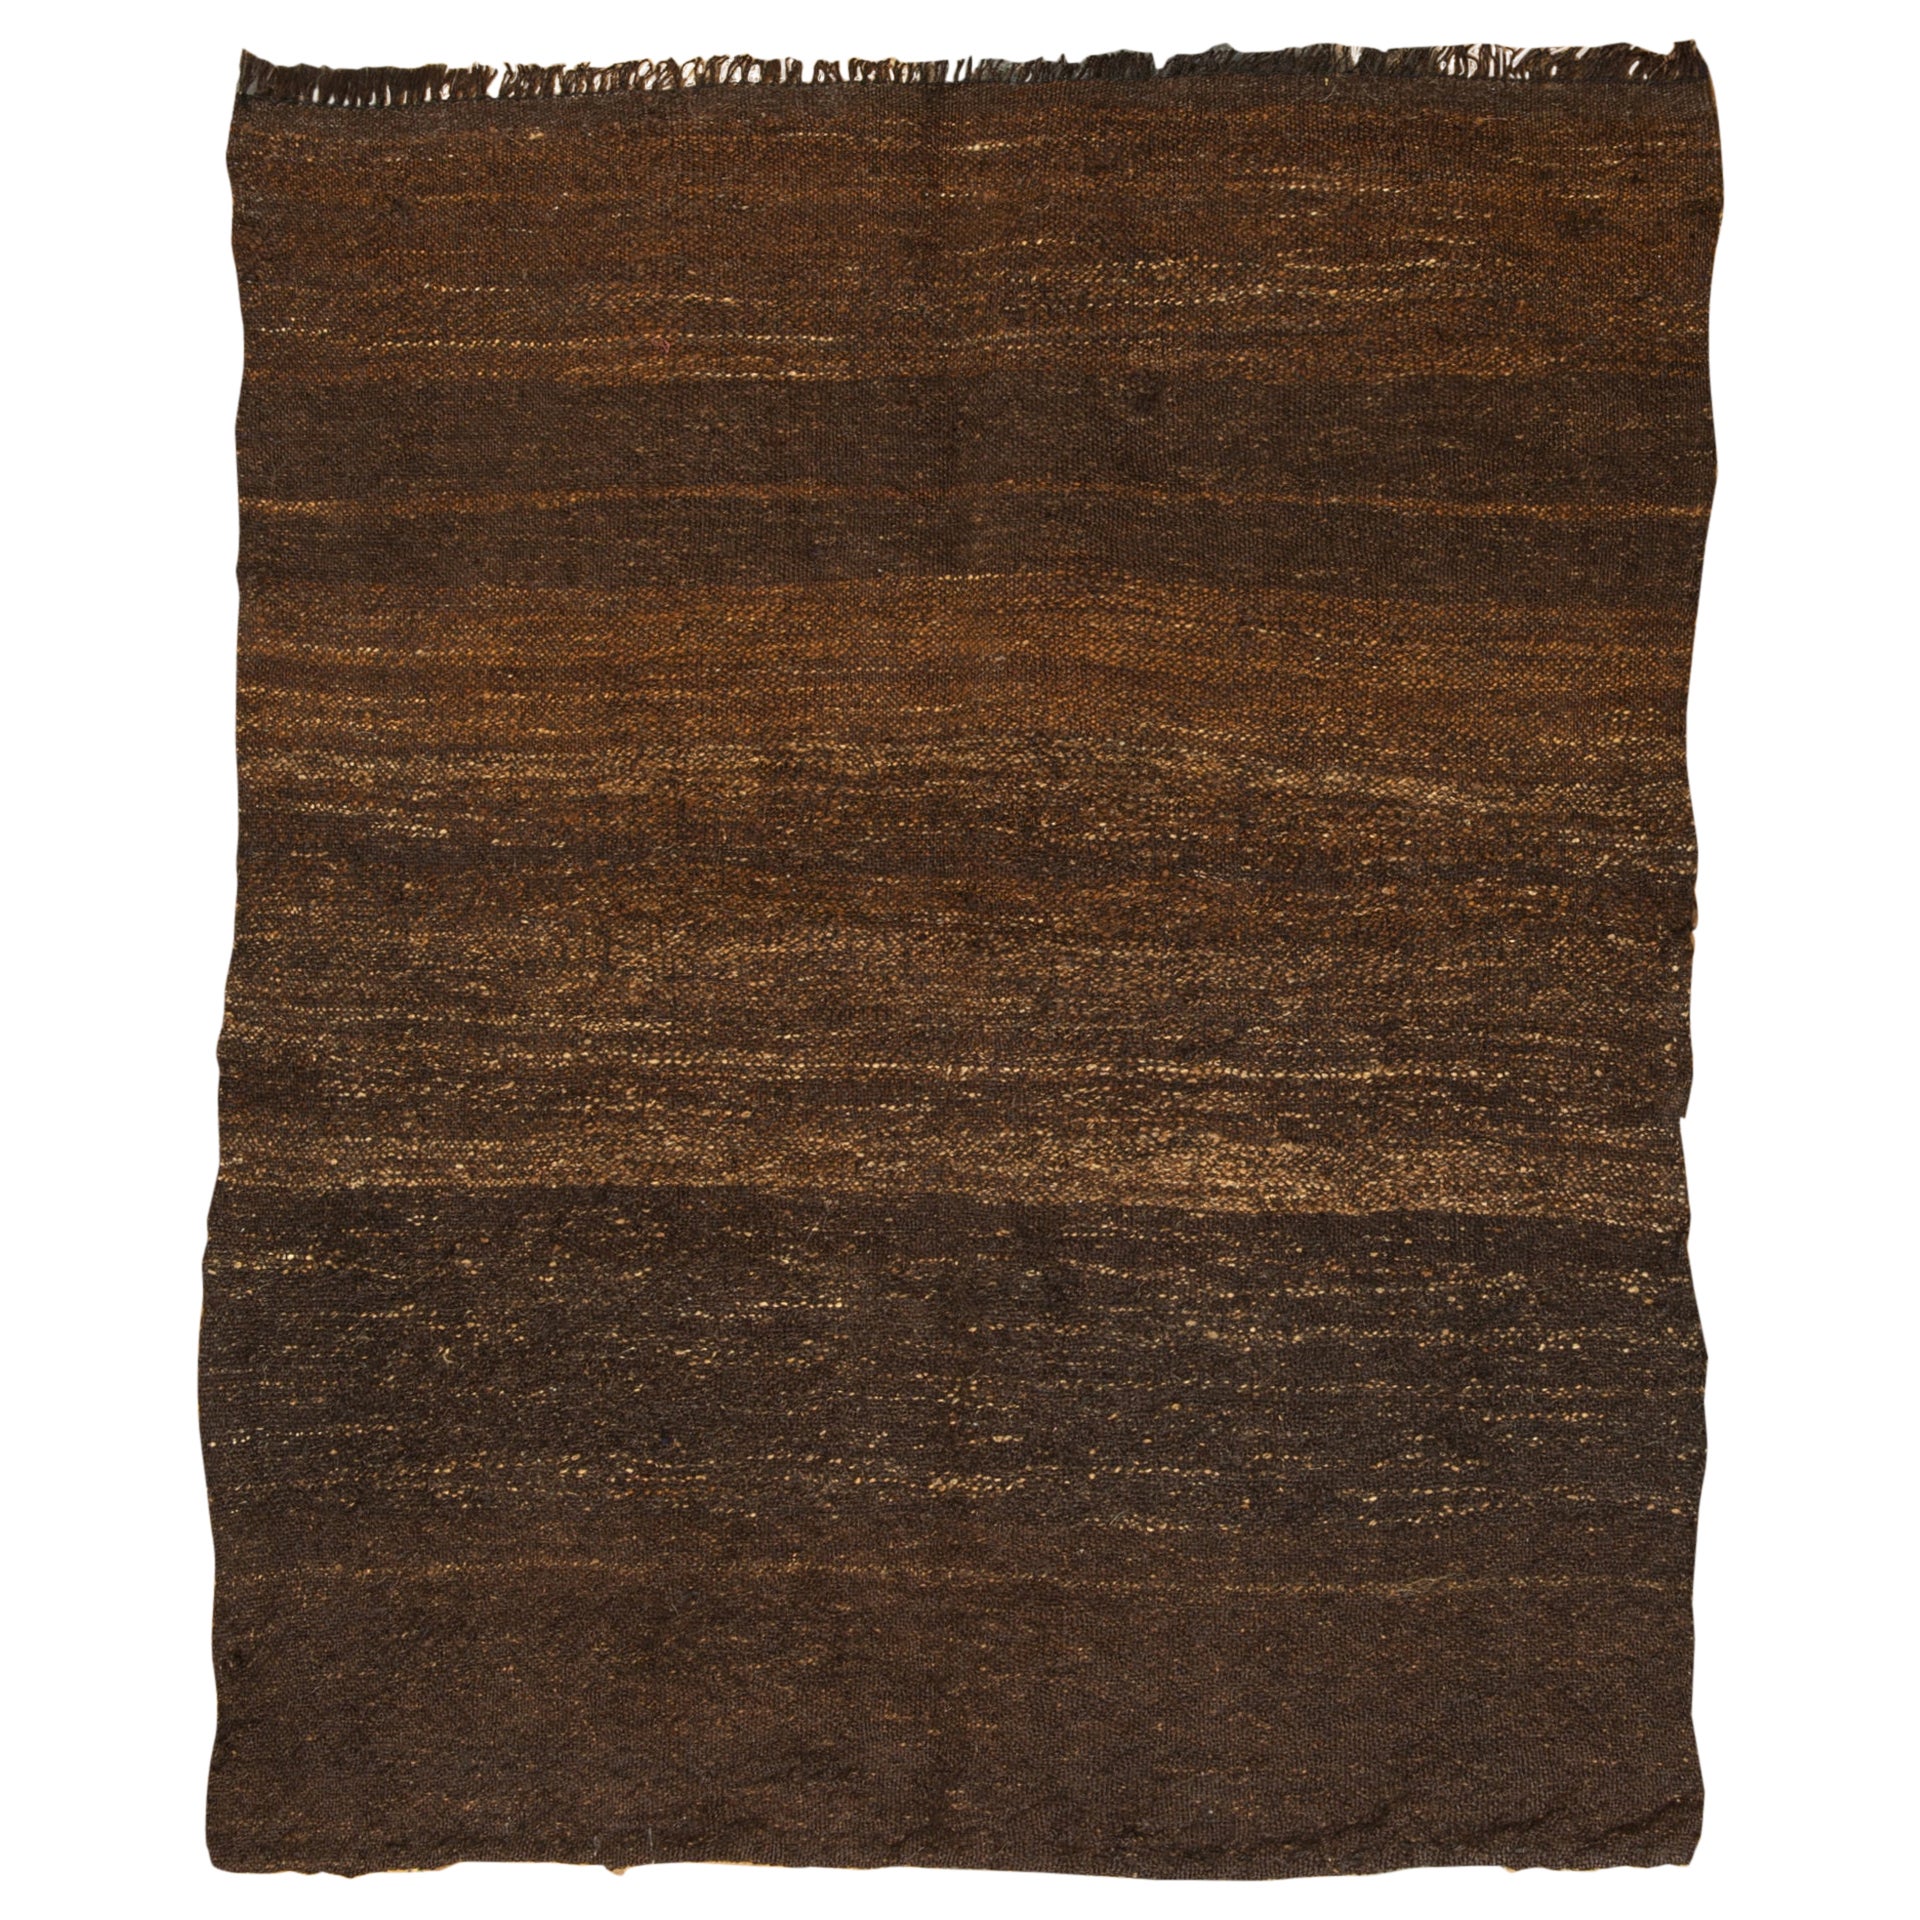 Old Black-Brown Primitive Carpet or Flatwave